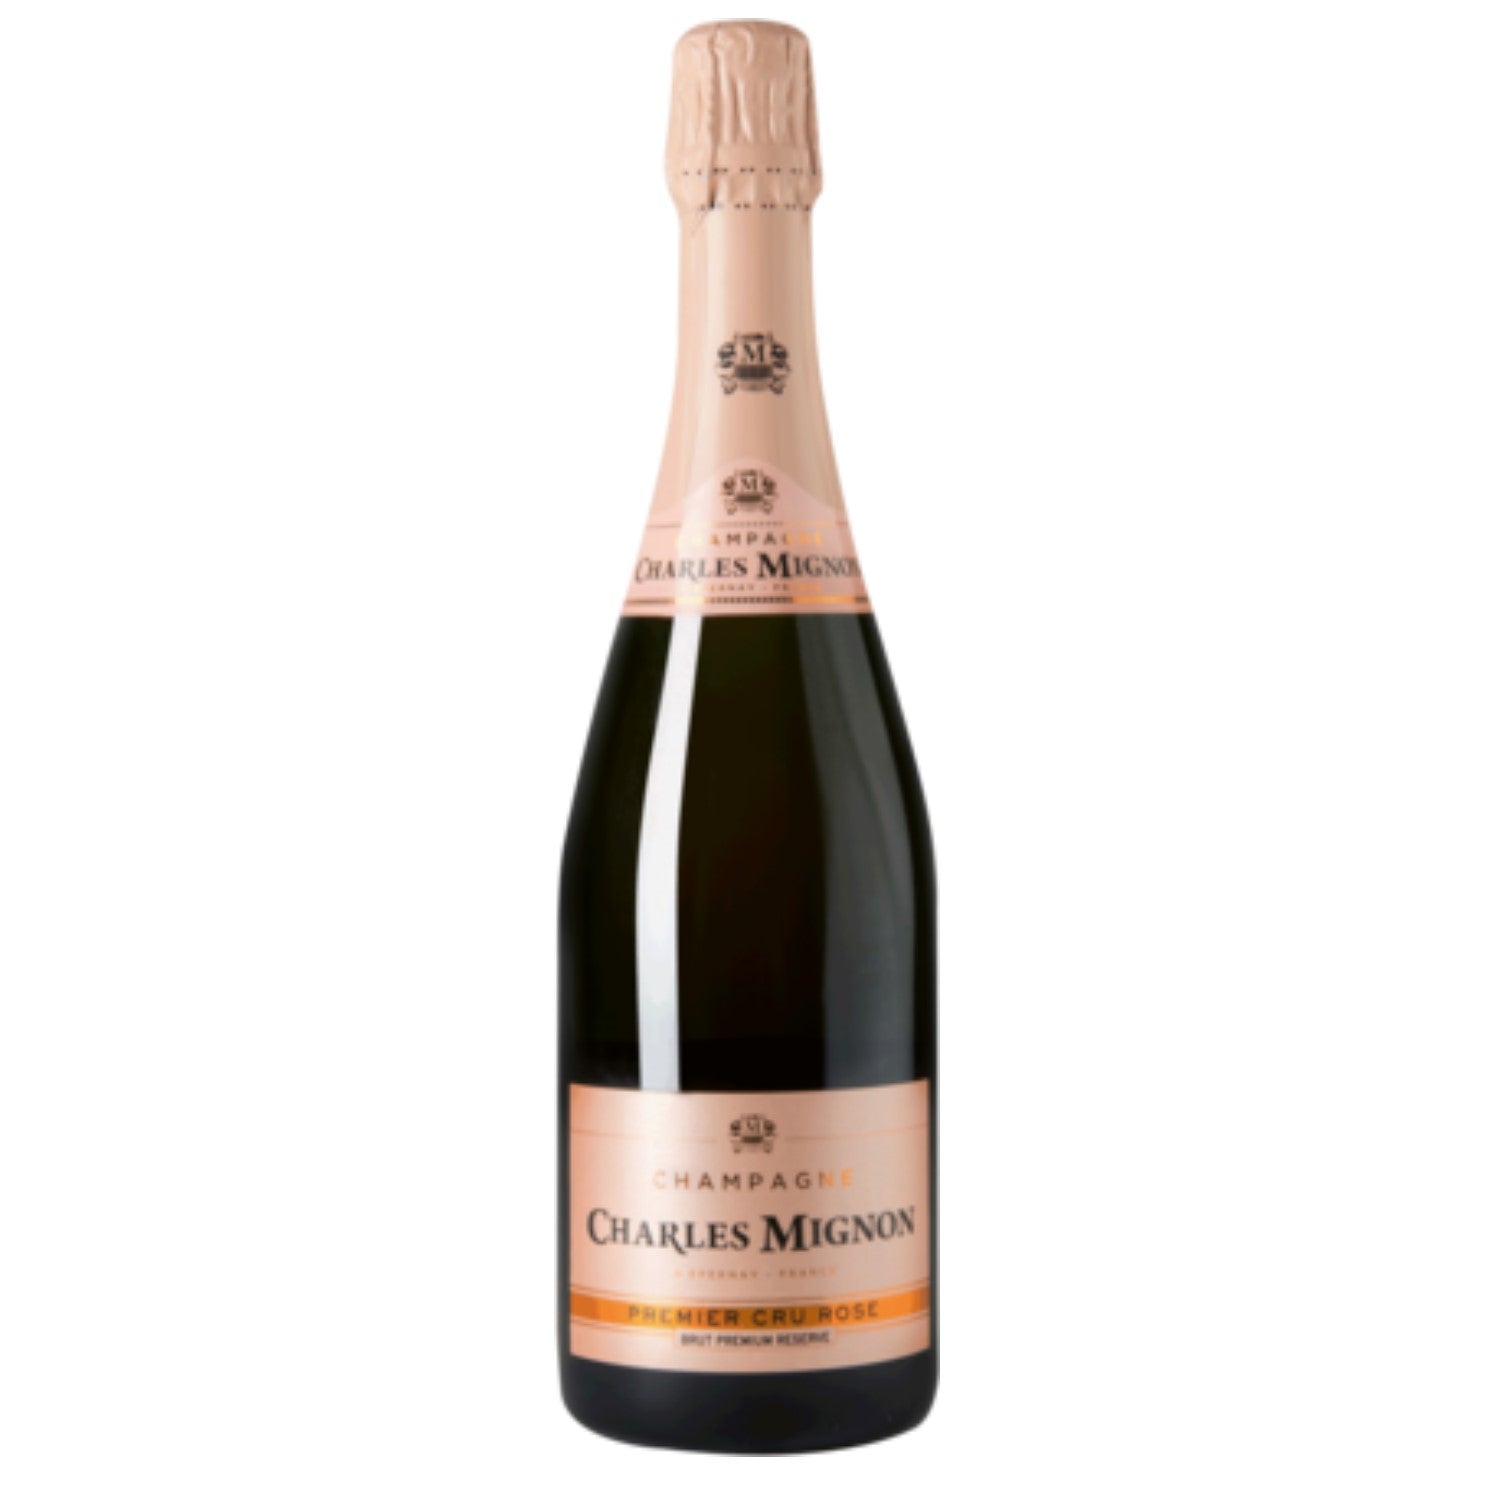 Charles Mignon Brut Rosé Premium Réserve Premier Cru Champagne AOC Champagner Frankreich (12 x 0.75l) - Versanel -